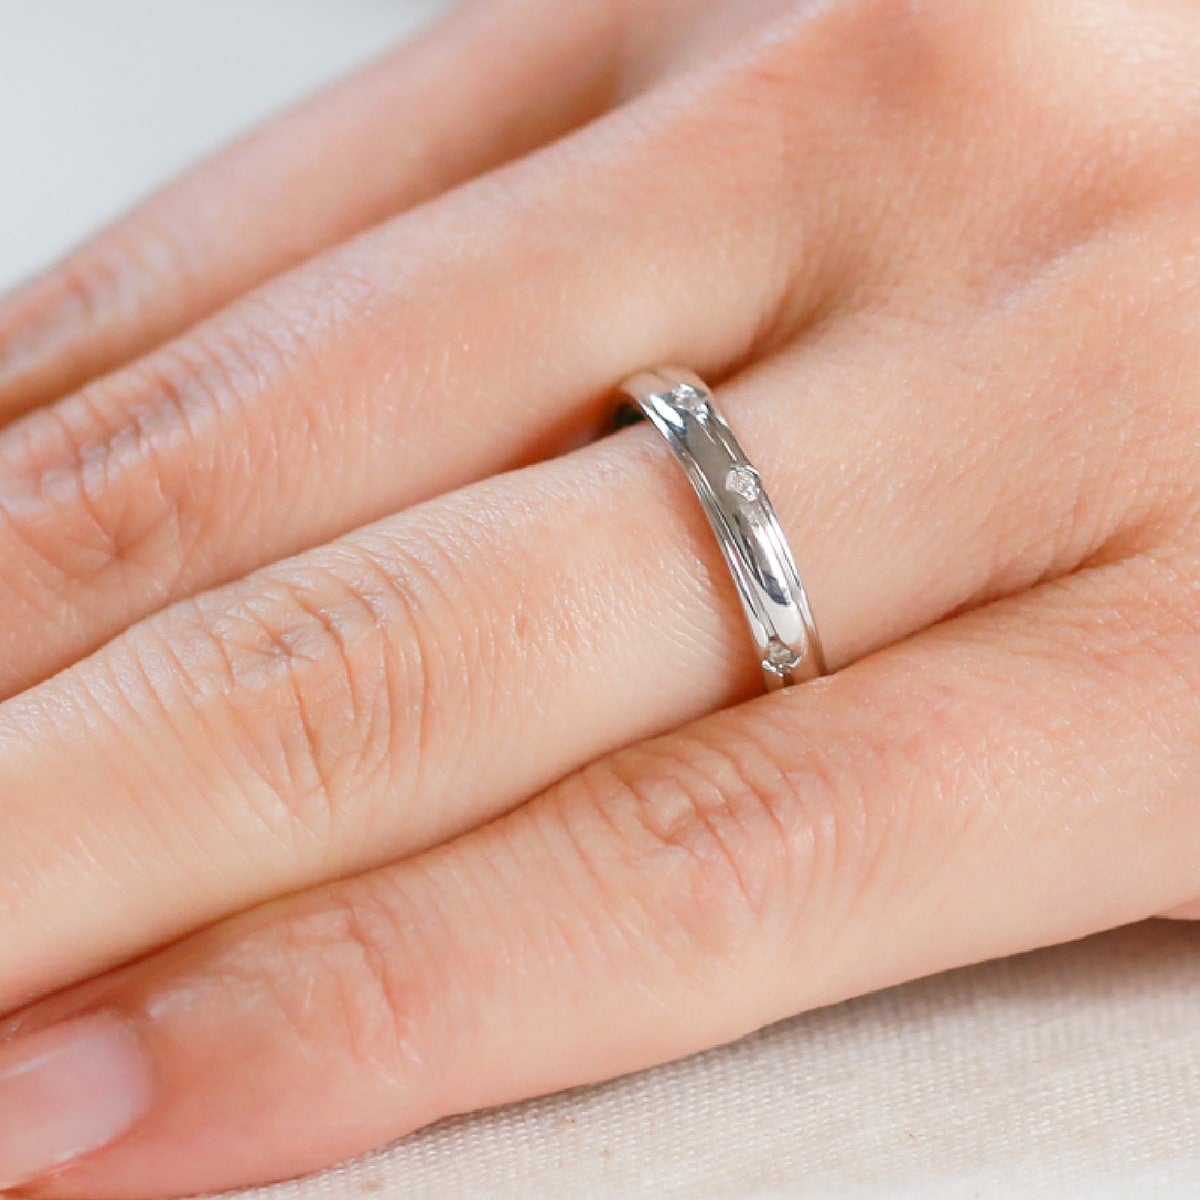 結婚指輪 ダイヤモンド 2本セット | dr3688dr3644